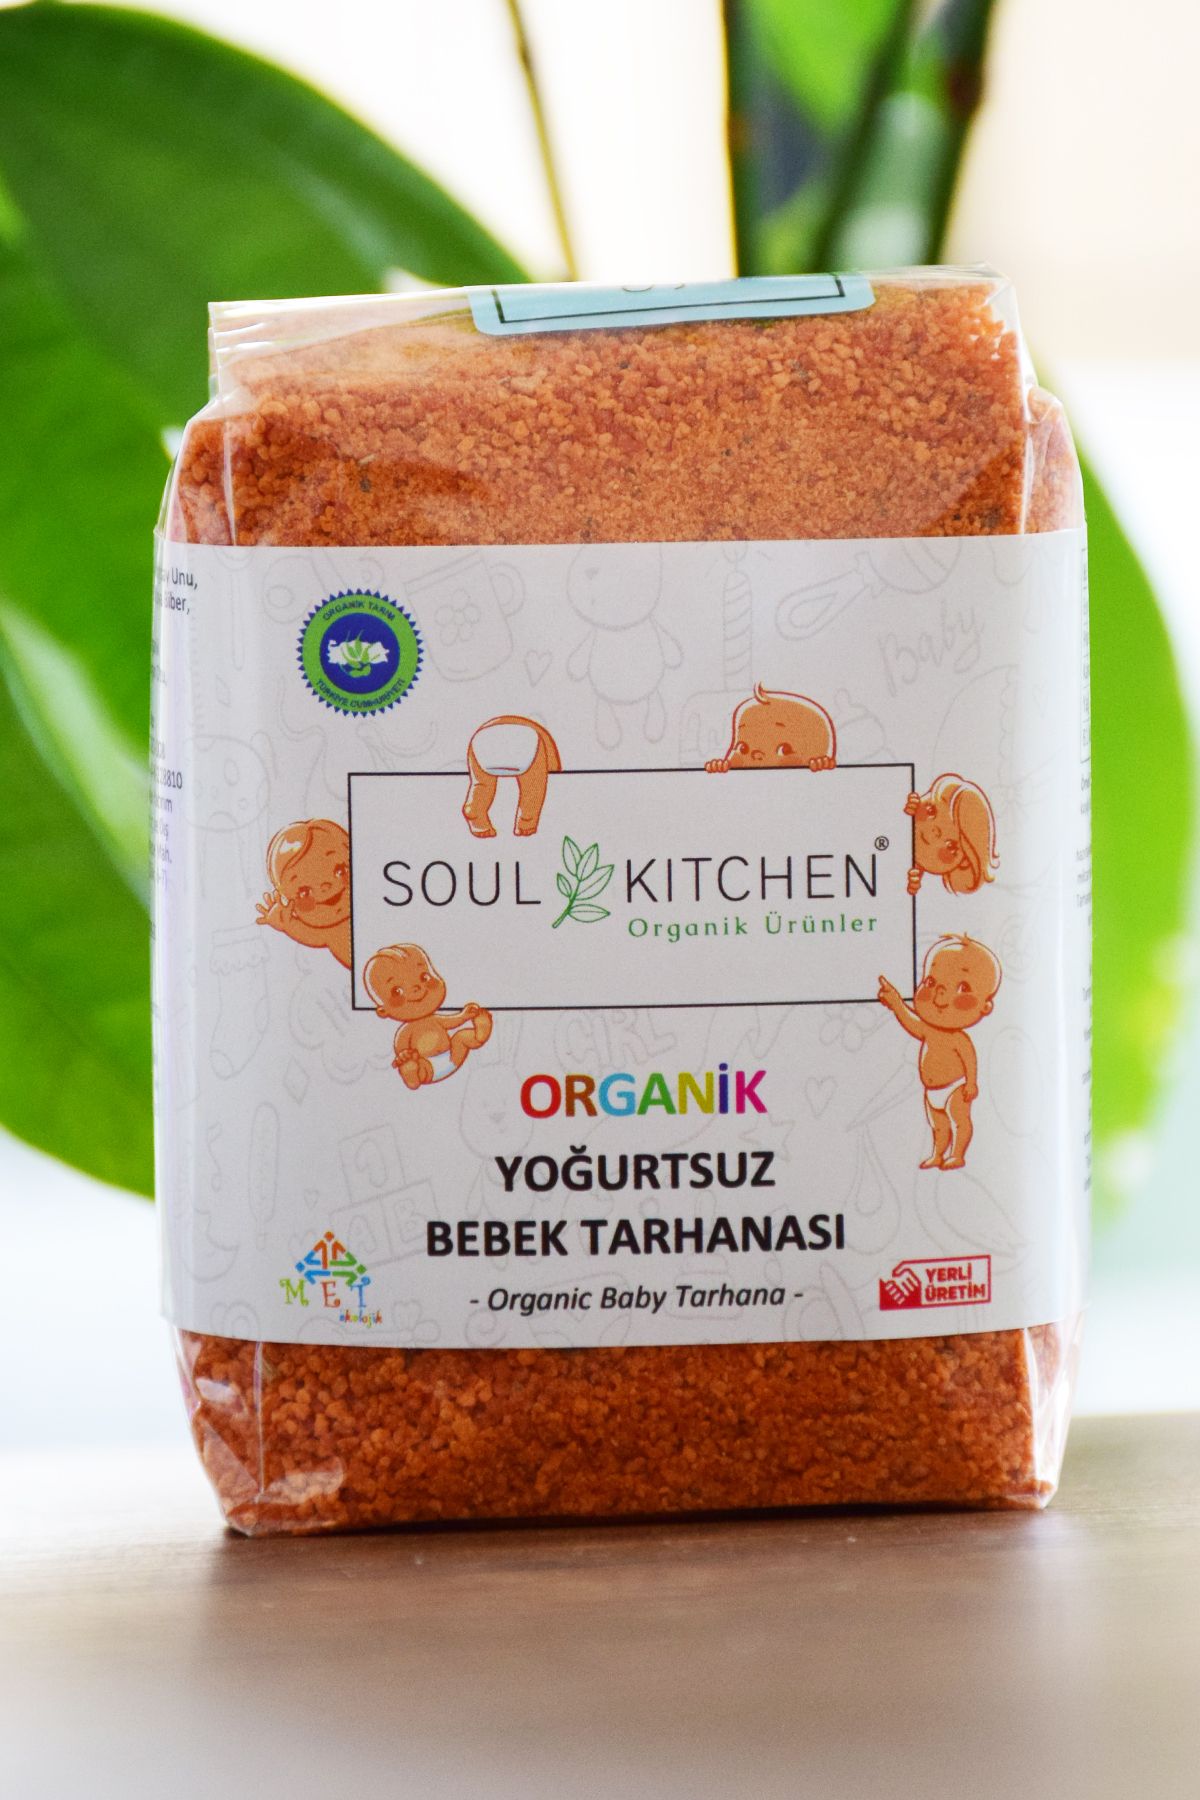 Soul Kitchen Organik Ürünler Organik Yoğurtsuz Bebek Tarhanası 250gr - Vegan